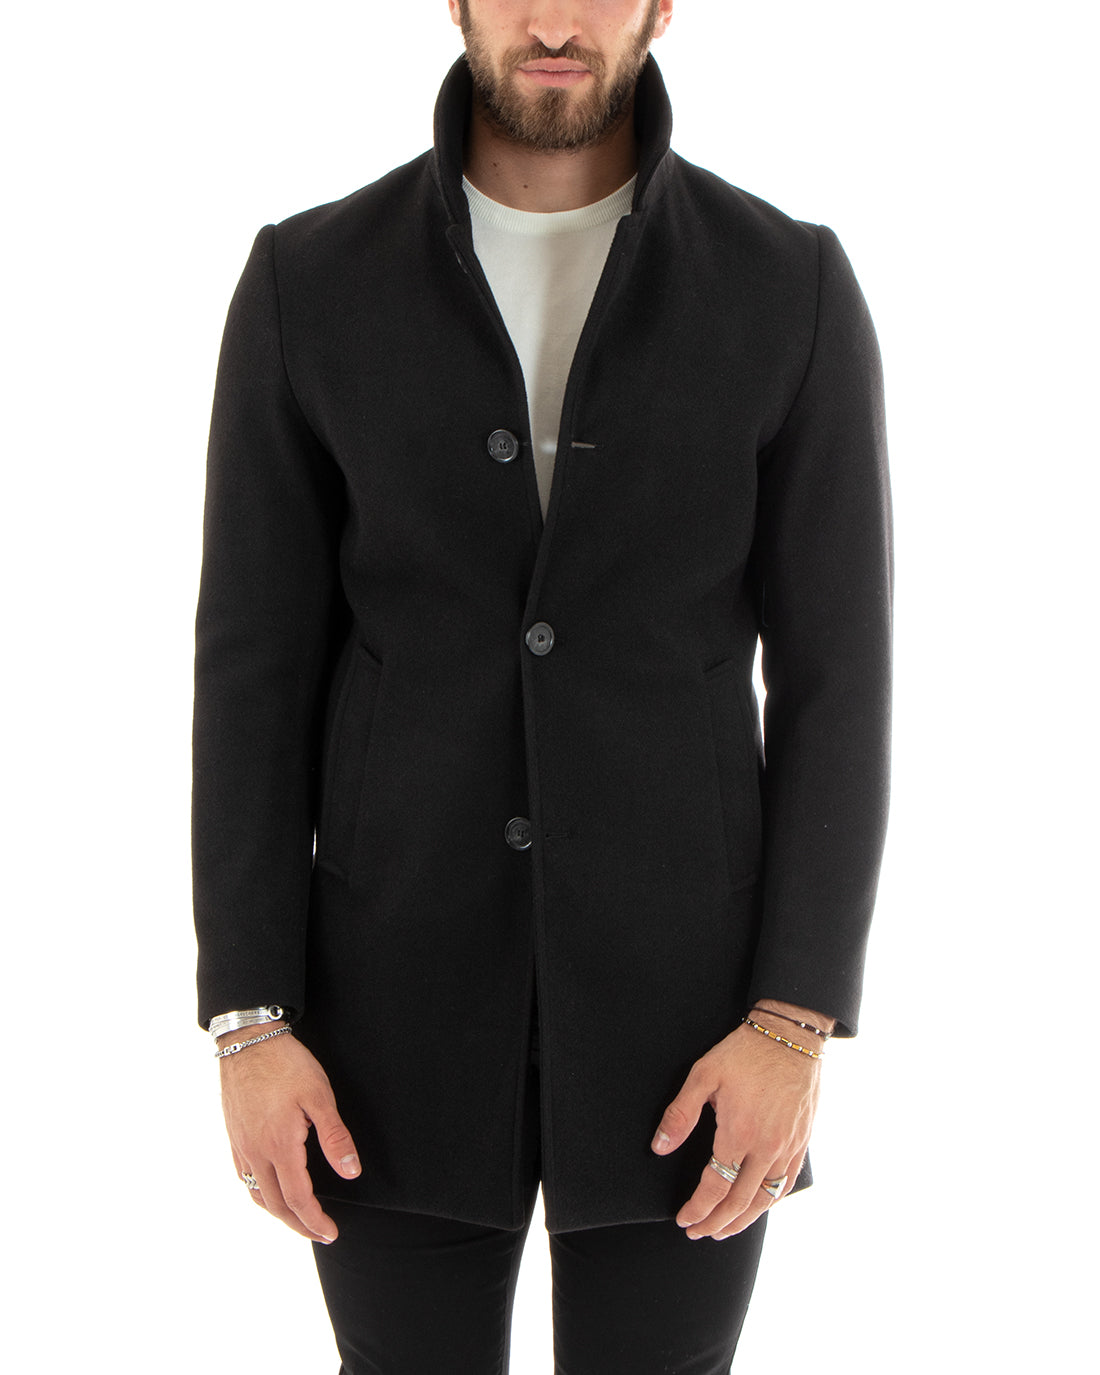 Cappotto Monopetto Uomo Giacca Collo Coreano Giaccone Lungo Nero Baronetto Elegante GIOSAL-G3109A